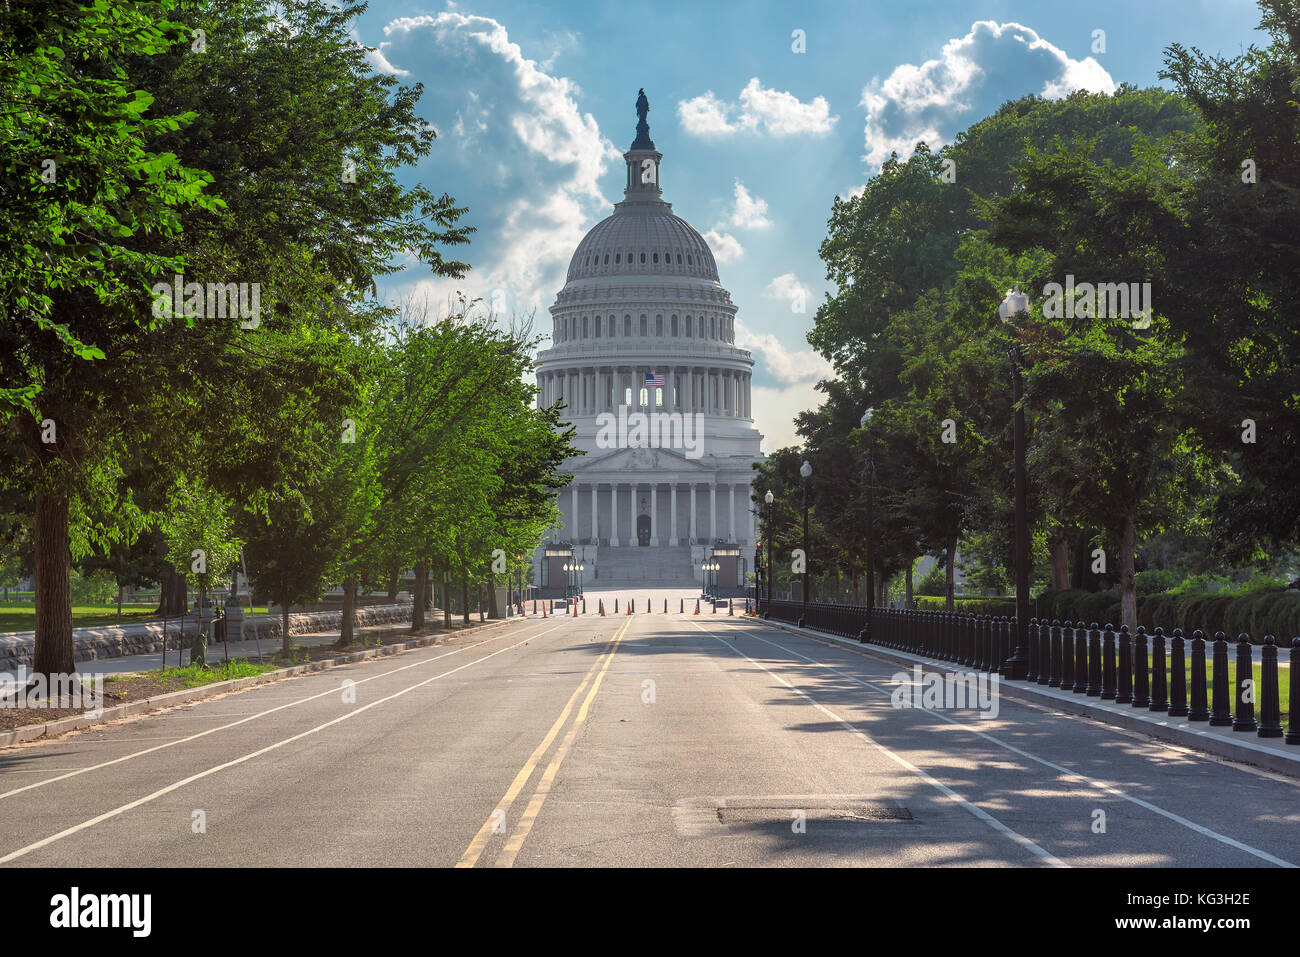 El edificio del Capitolio de EE.UU en día soleado - Washington DC, Estados Unidos Foto de stock